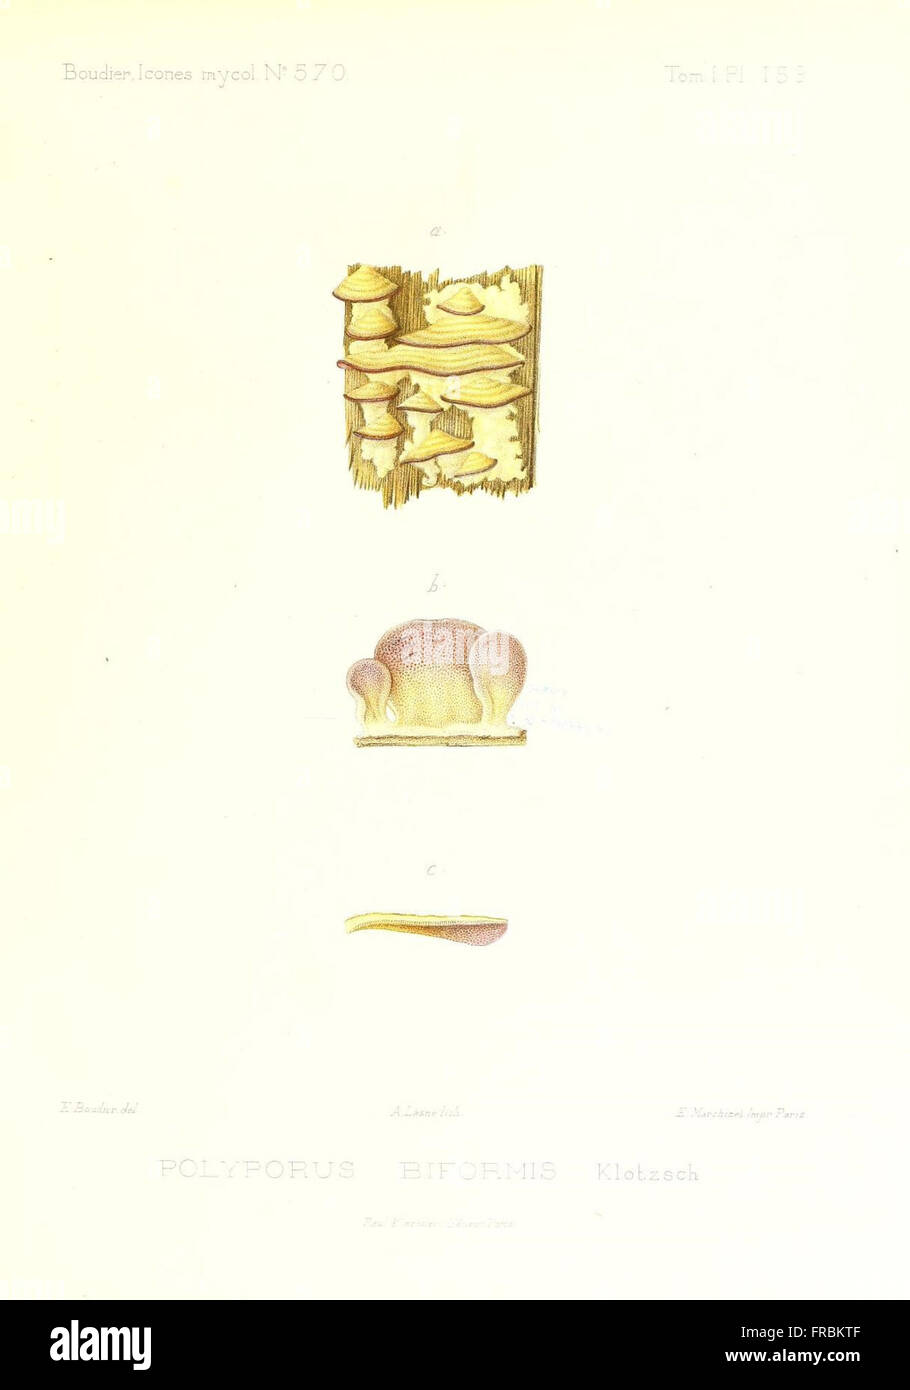 Icones mycologicC3A6, ou Iconographie des champignons de France principalement Discomycetes (Pl. 159) Stock Photo